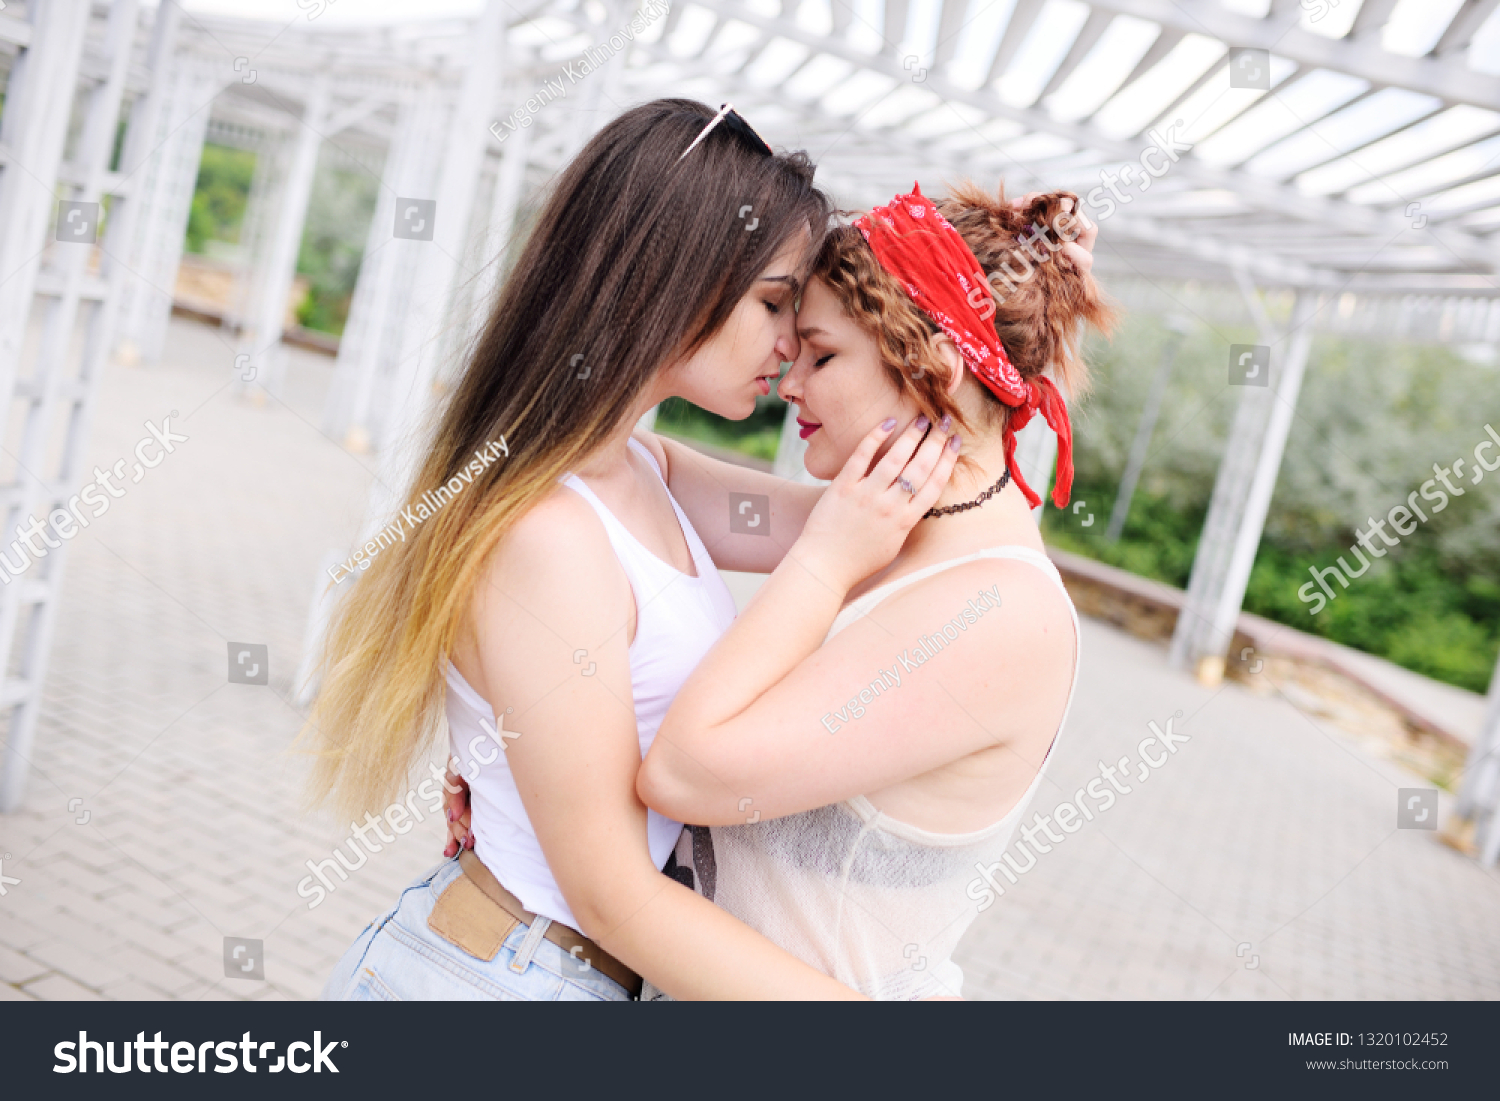 лесби обнимаются и целуются фото 14